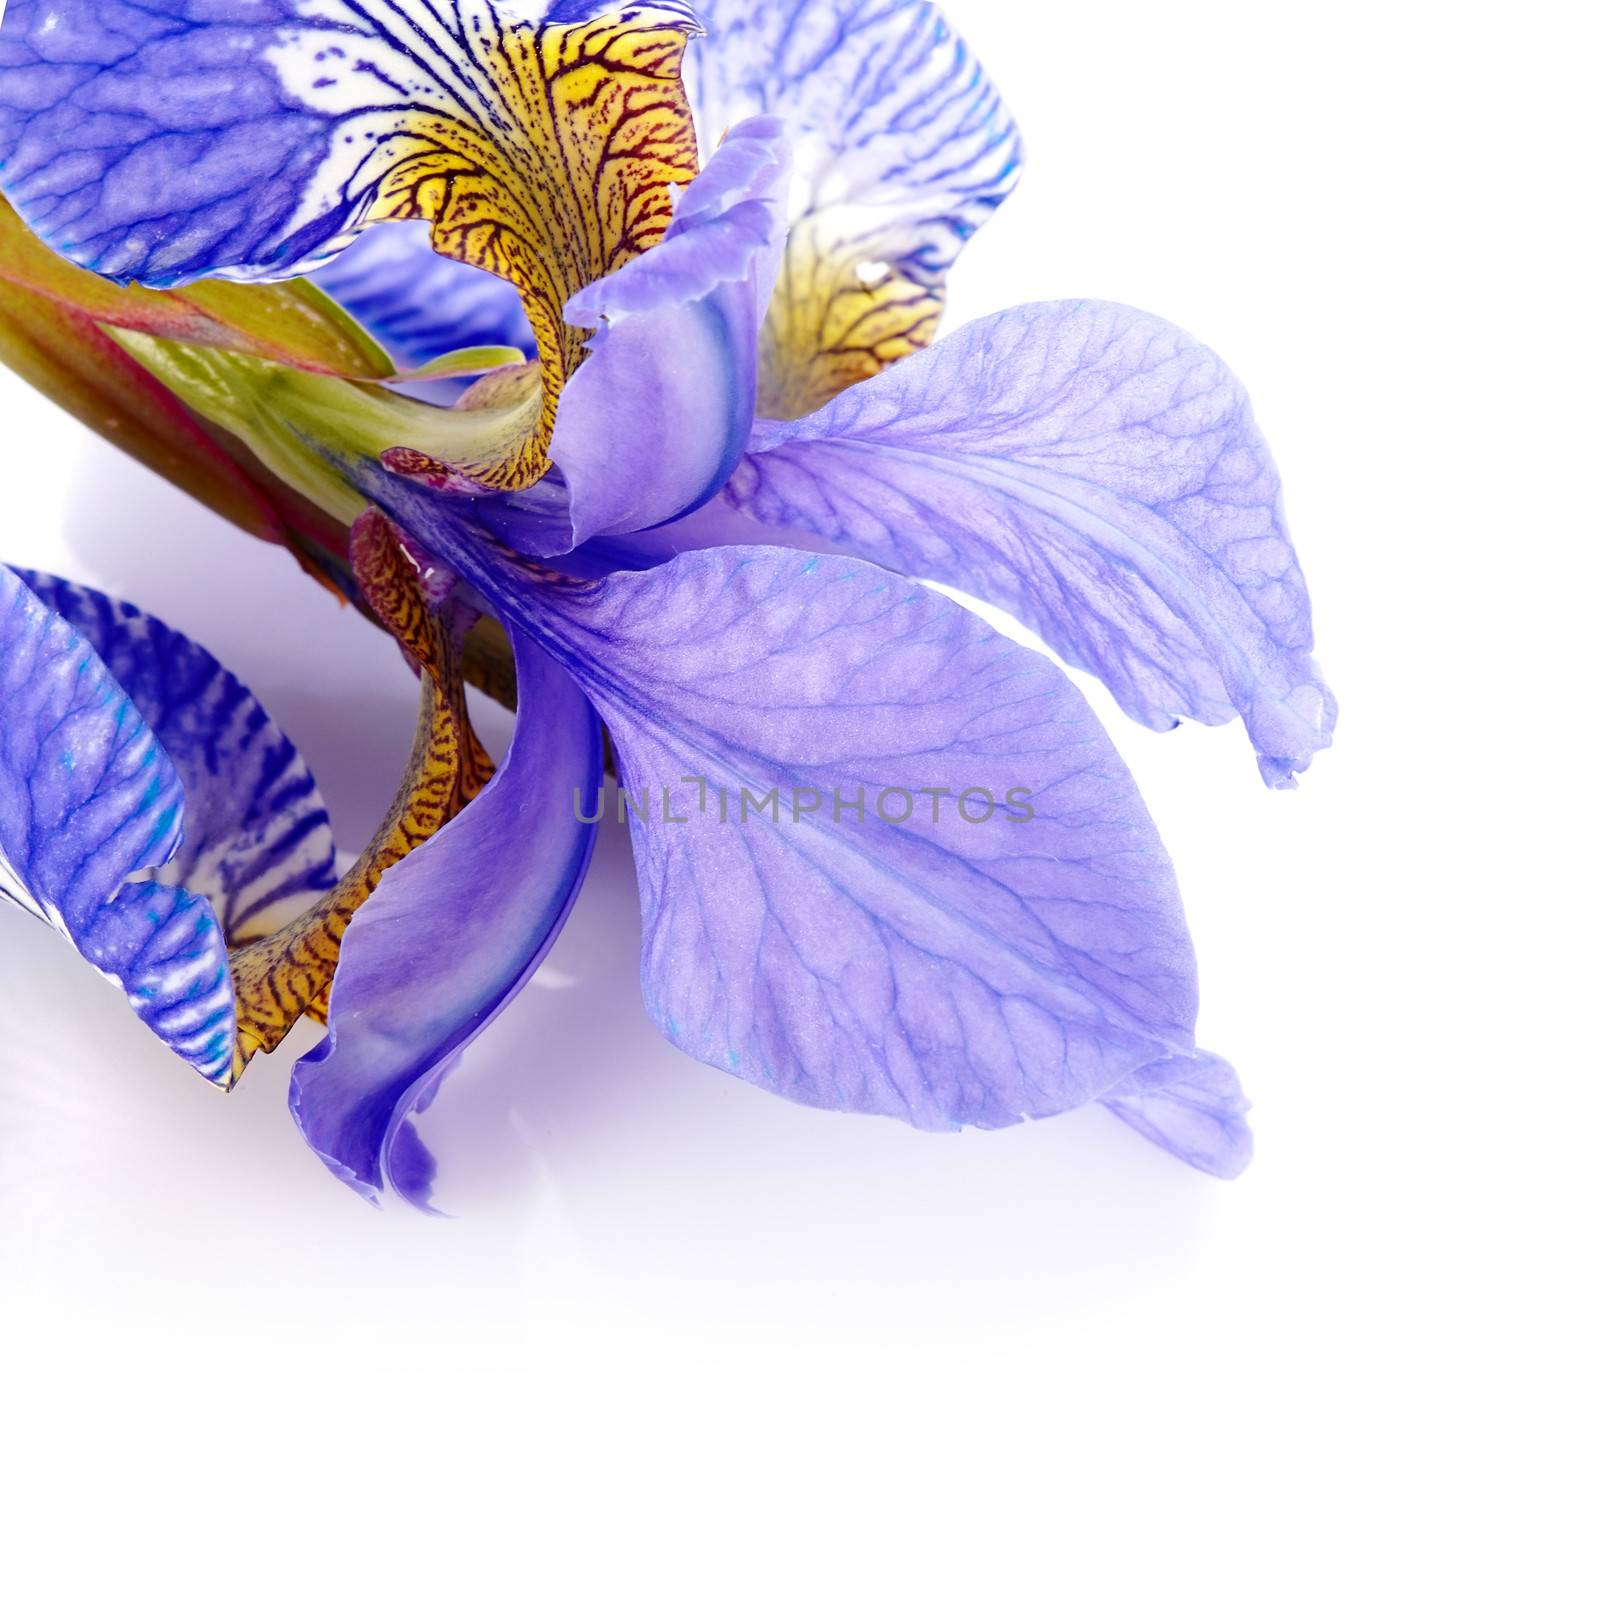 Petals of a flower of an iris. by Azaliya